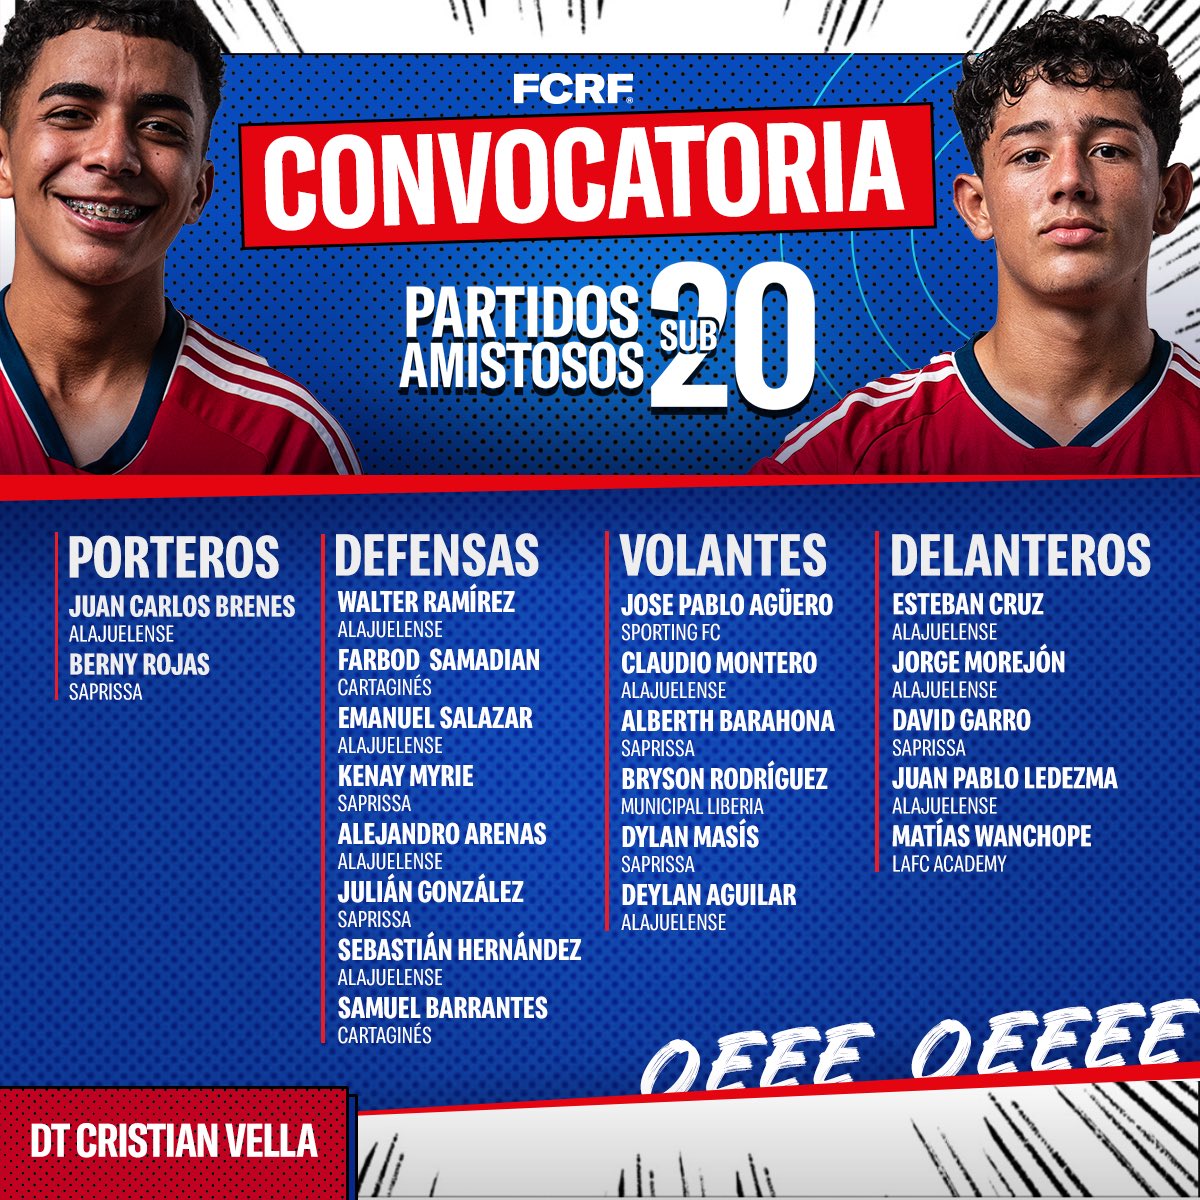 Esta es la convocatoria hecha por el profe Cristian Vella de la Sele Sub 20 que enfrentará los amistosos contra Perú. ¡Vamoooos muchachos! 🇨🇷🙌🏻

Todos los detalles en la nota: bit.ly/3y1cfWU

#FCRF #LaSeleSub20